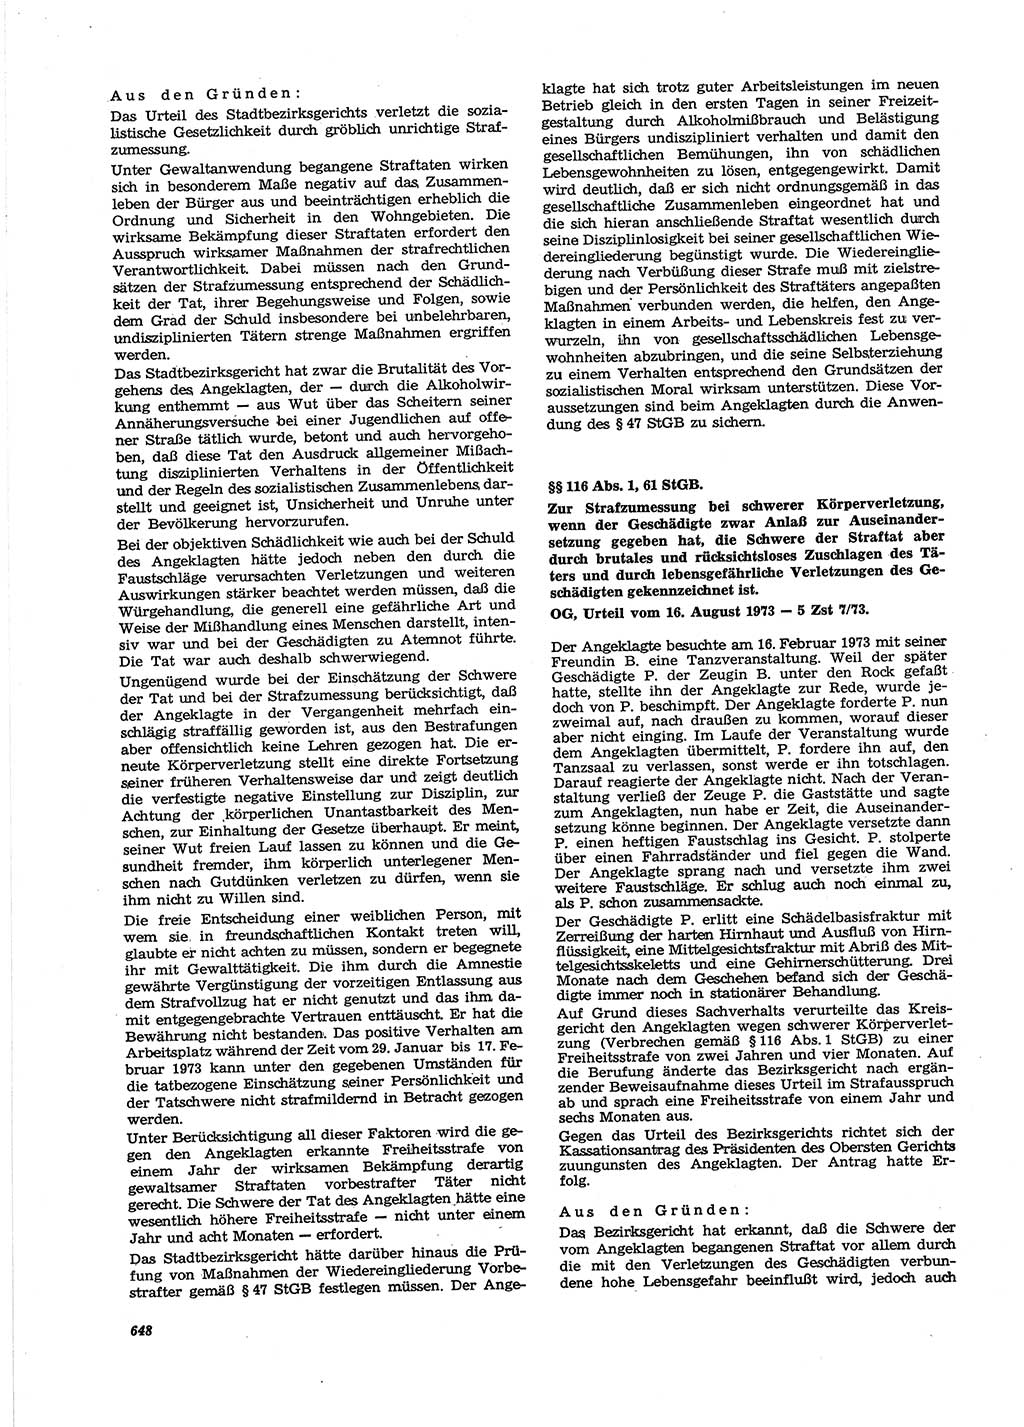 Neue Justiz (NJ), Zeitschrift für Recht und Rechtswissenschaft [Deutsche Demokratische Republik (DDR)], 27. Jahrgang 1973, Seite 648 (NJ DDR 1973, S. 648)